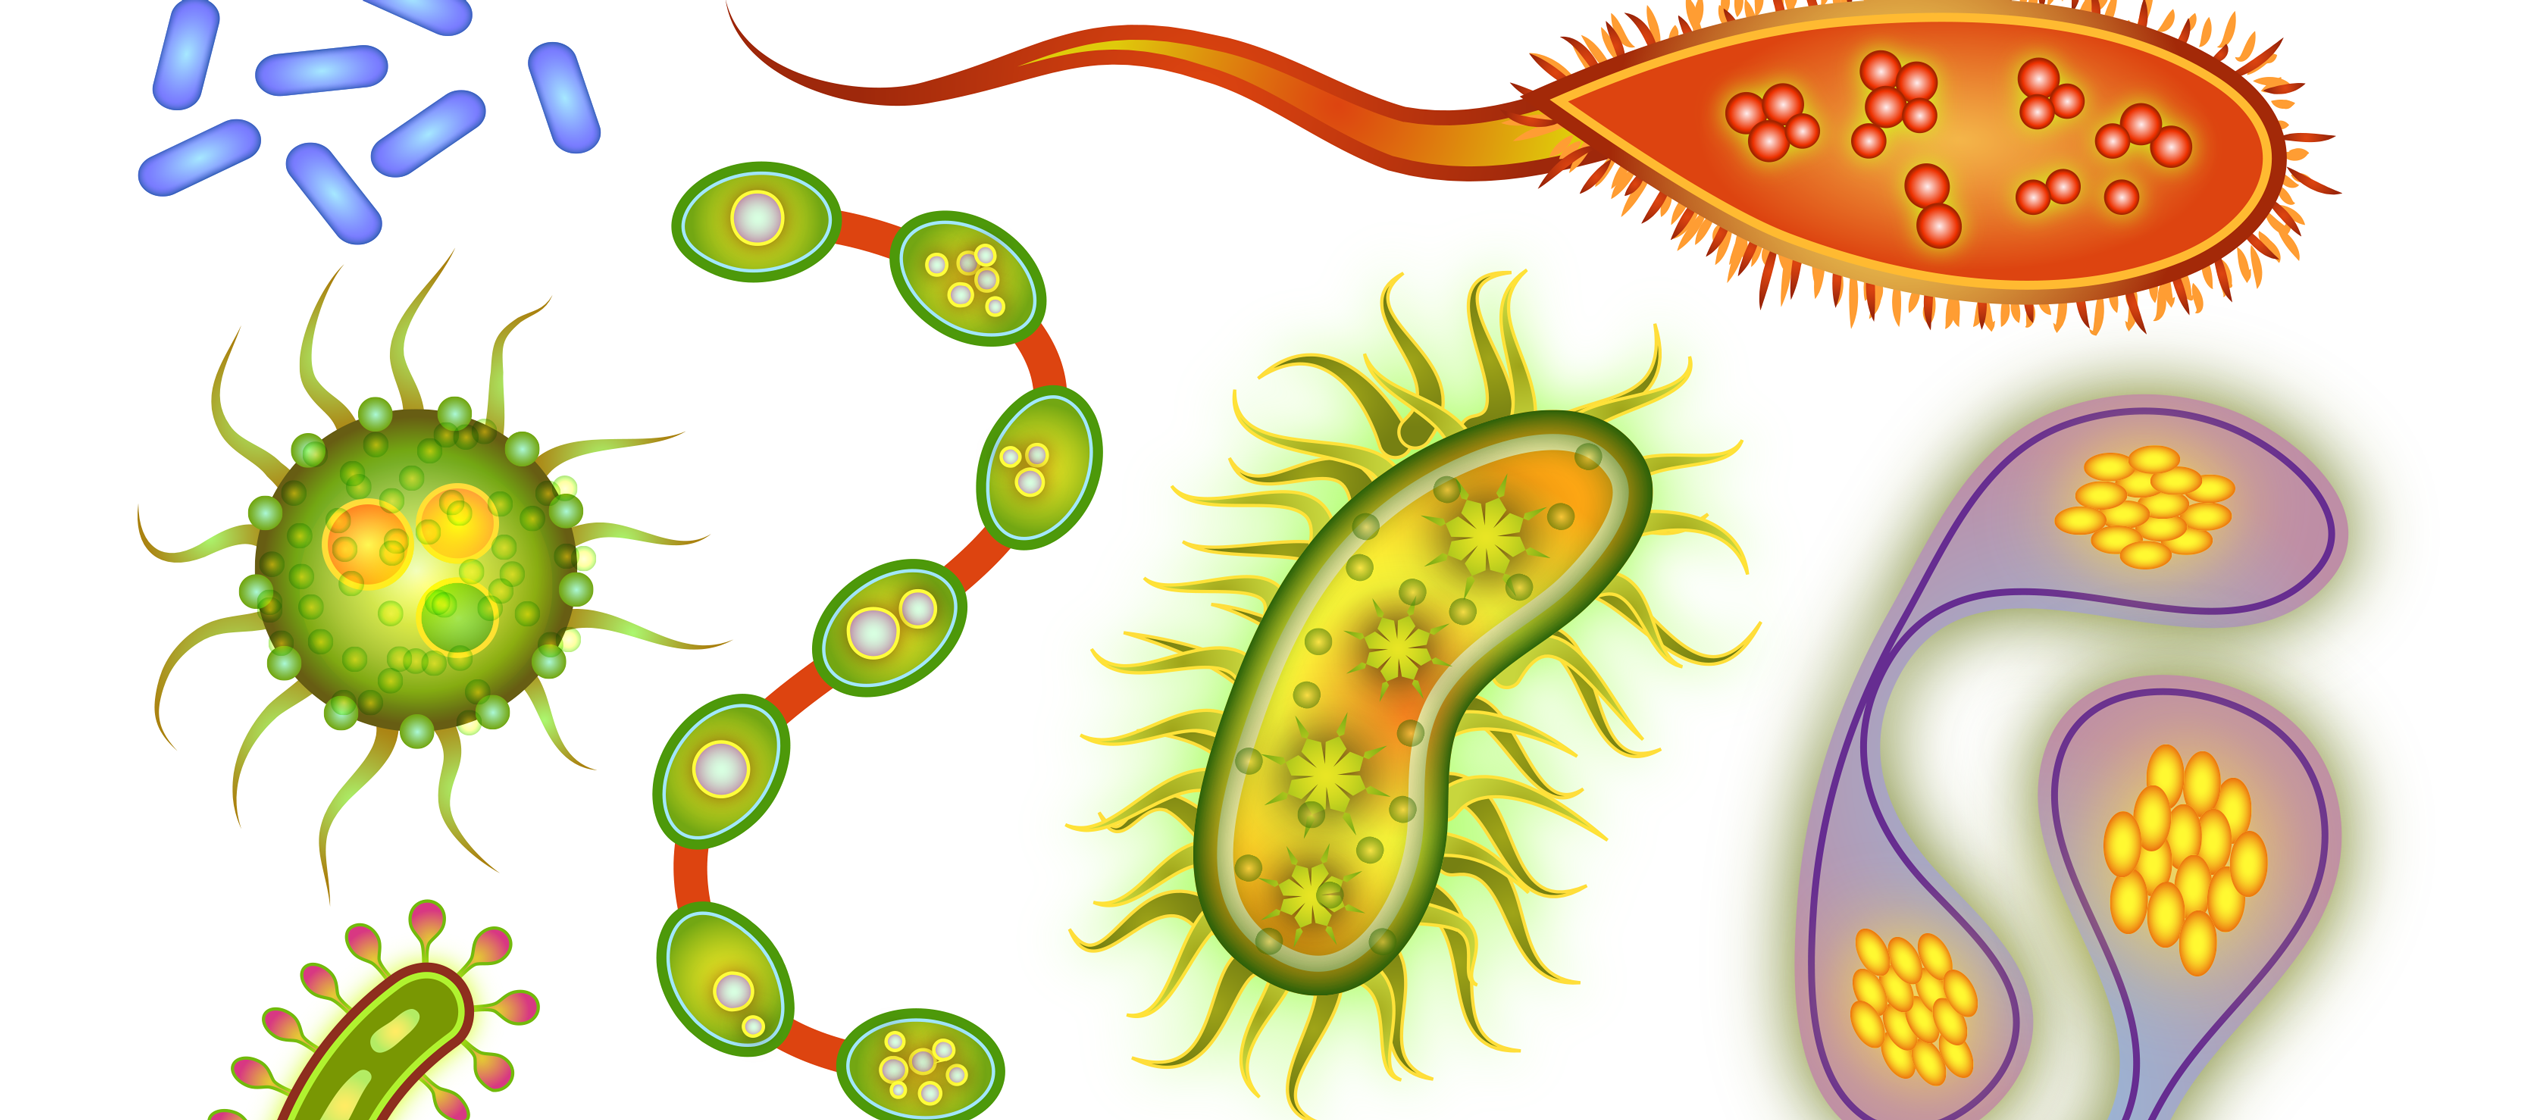 Объект изображенный на рисунках вызывает инфекционное заболевание. Микроорганизмы для детей. Вирусы бактерии микробы. Вирусы и бактерии для детей. Бактерии рисунок.